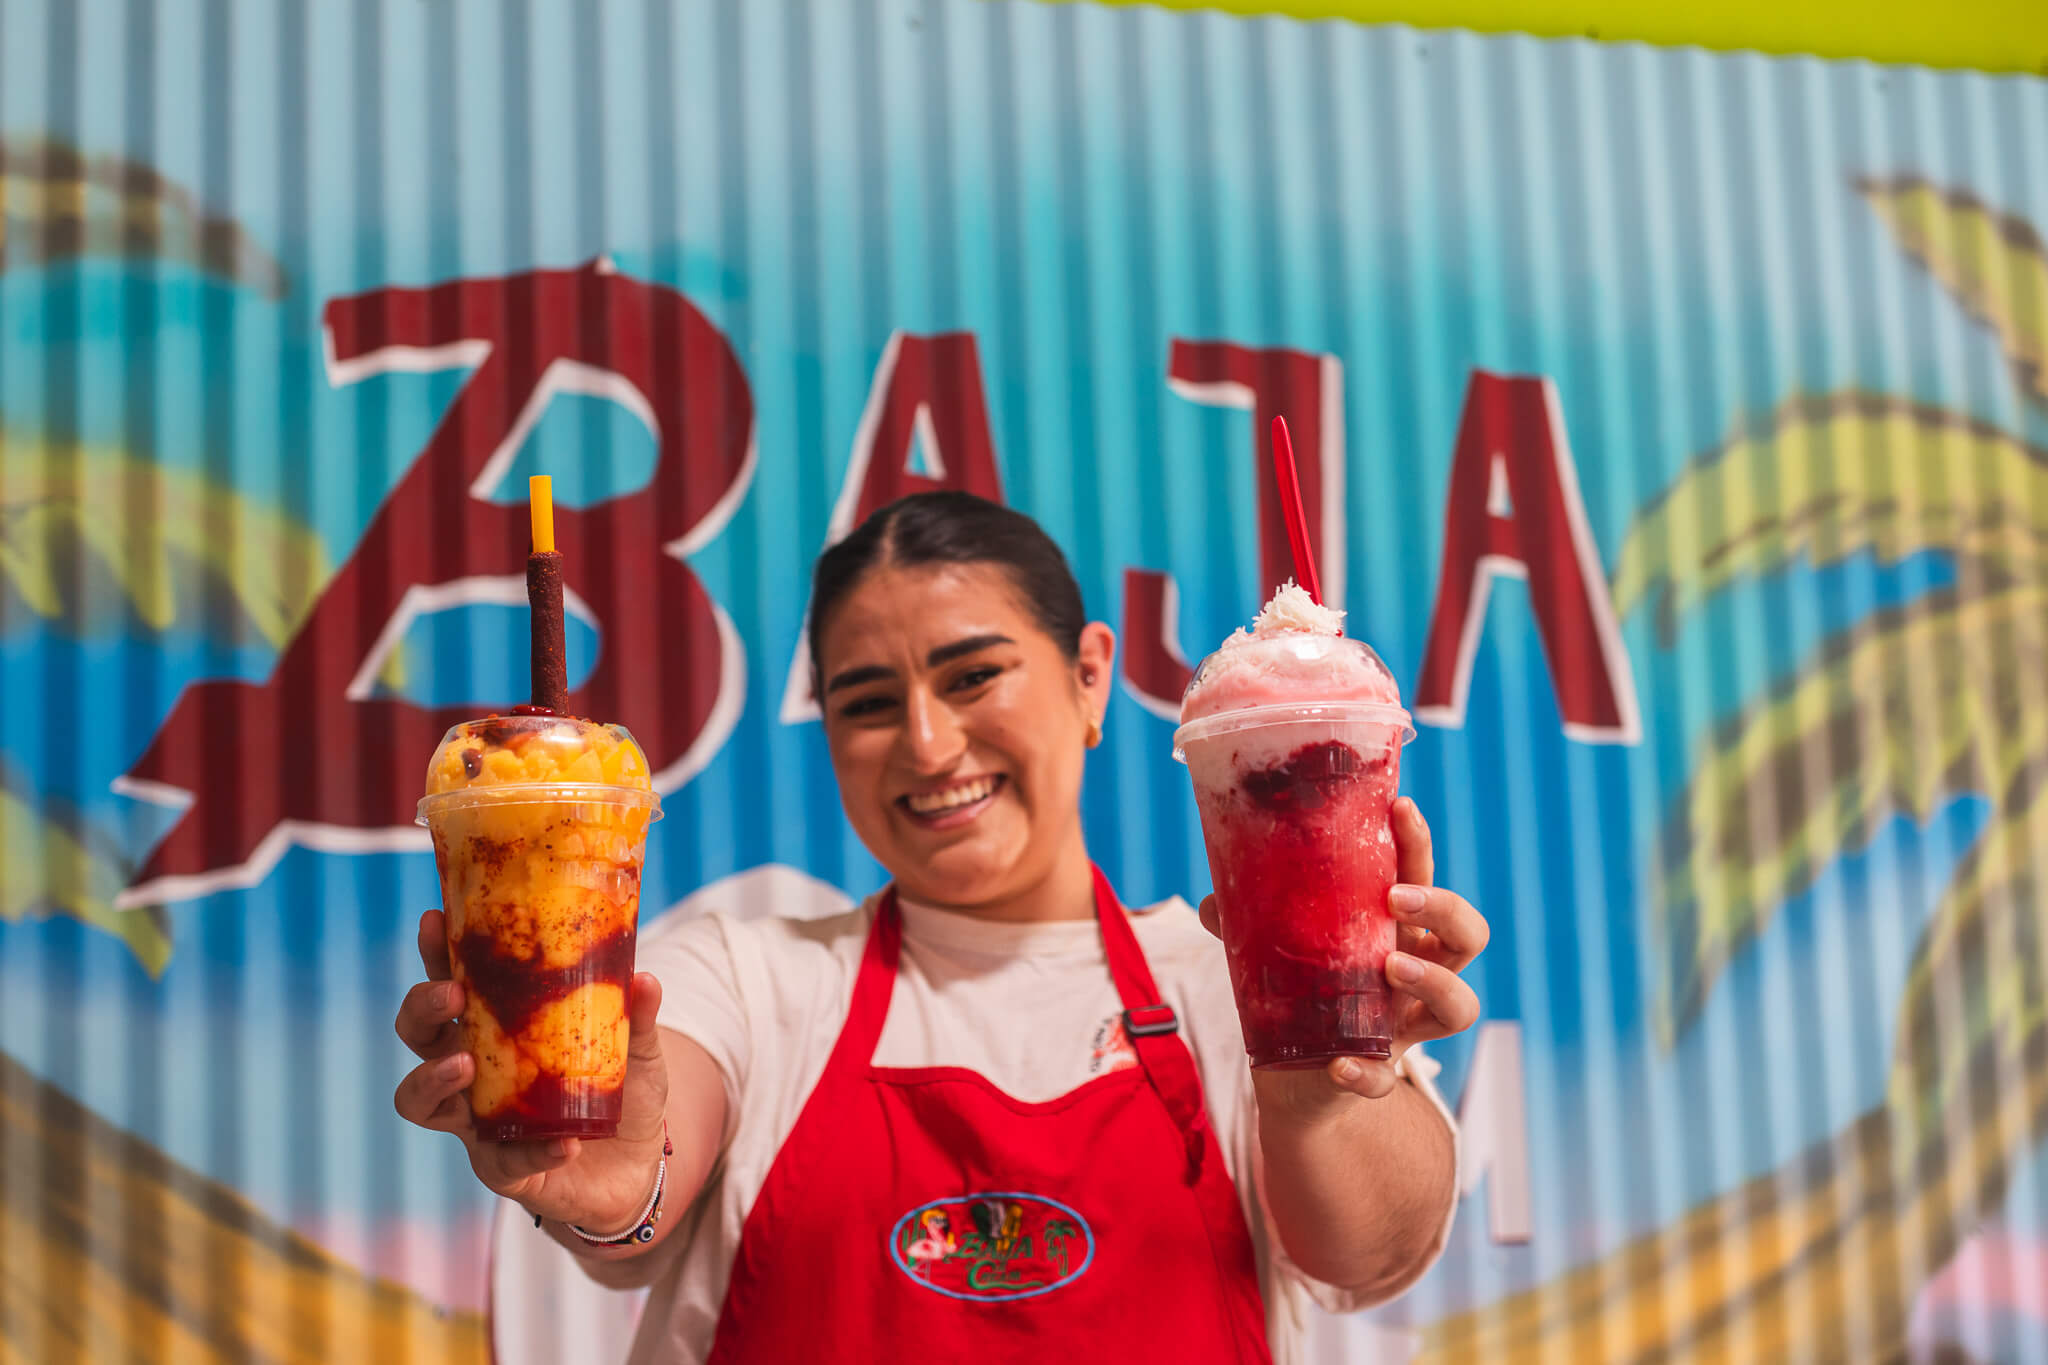 Image of Baja Ice Cream